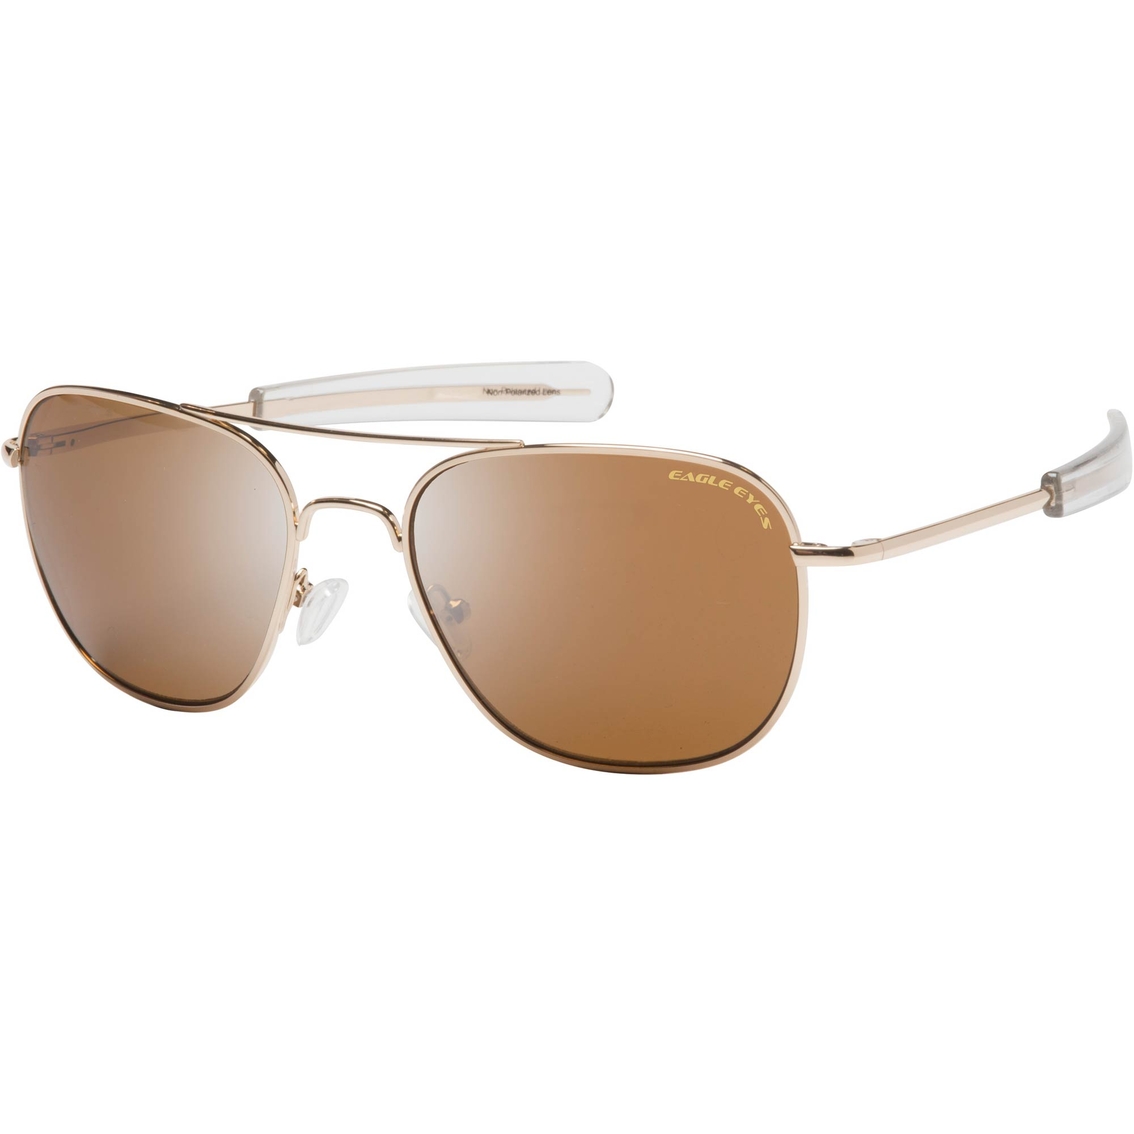 Eagle Eyes Freedom 25 R57 Sunglasses 12025 | Sunglasses | Clothing ...